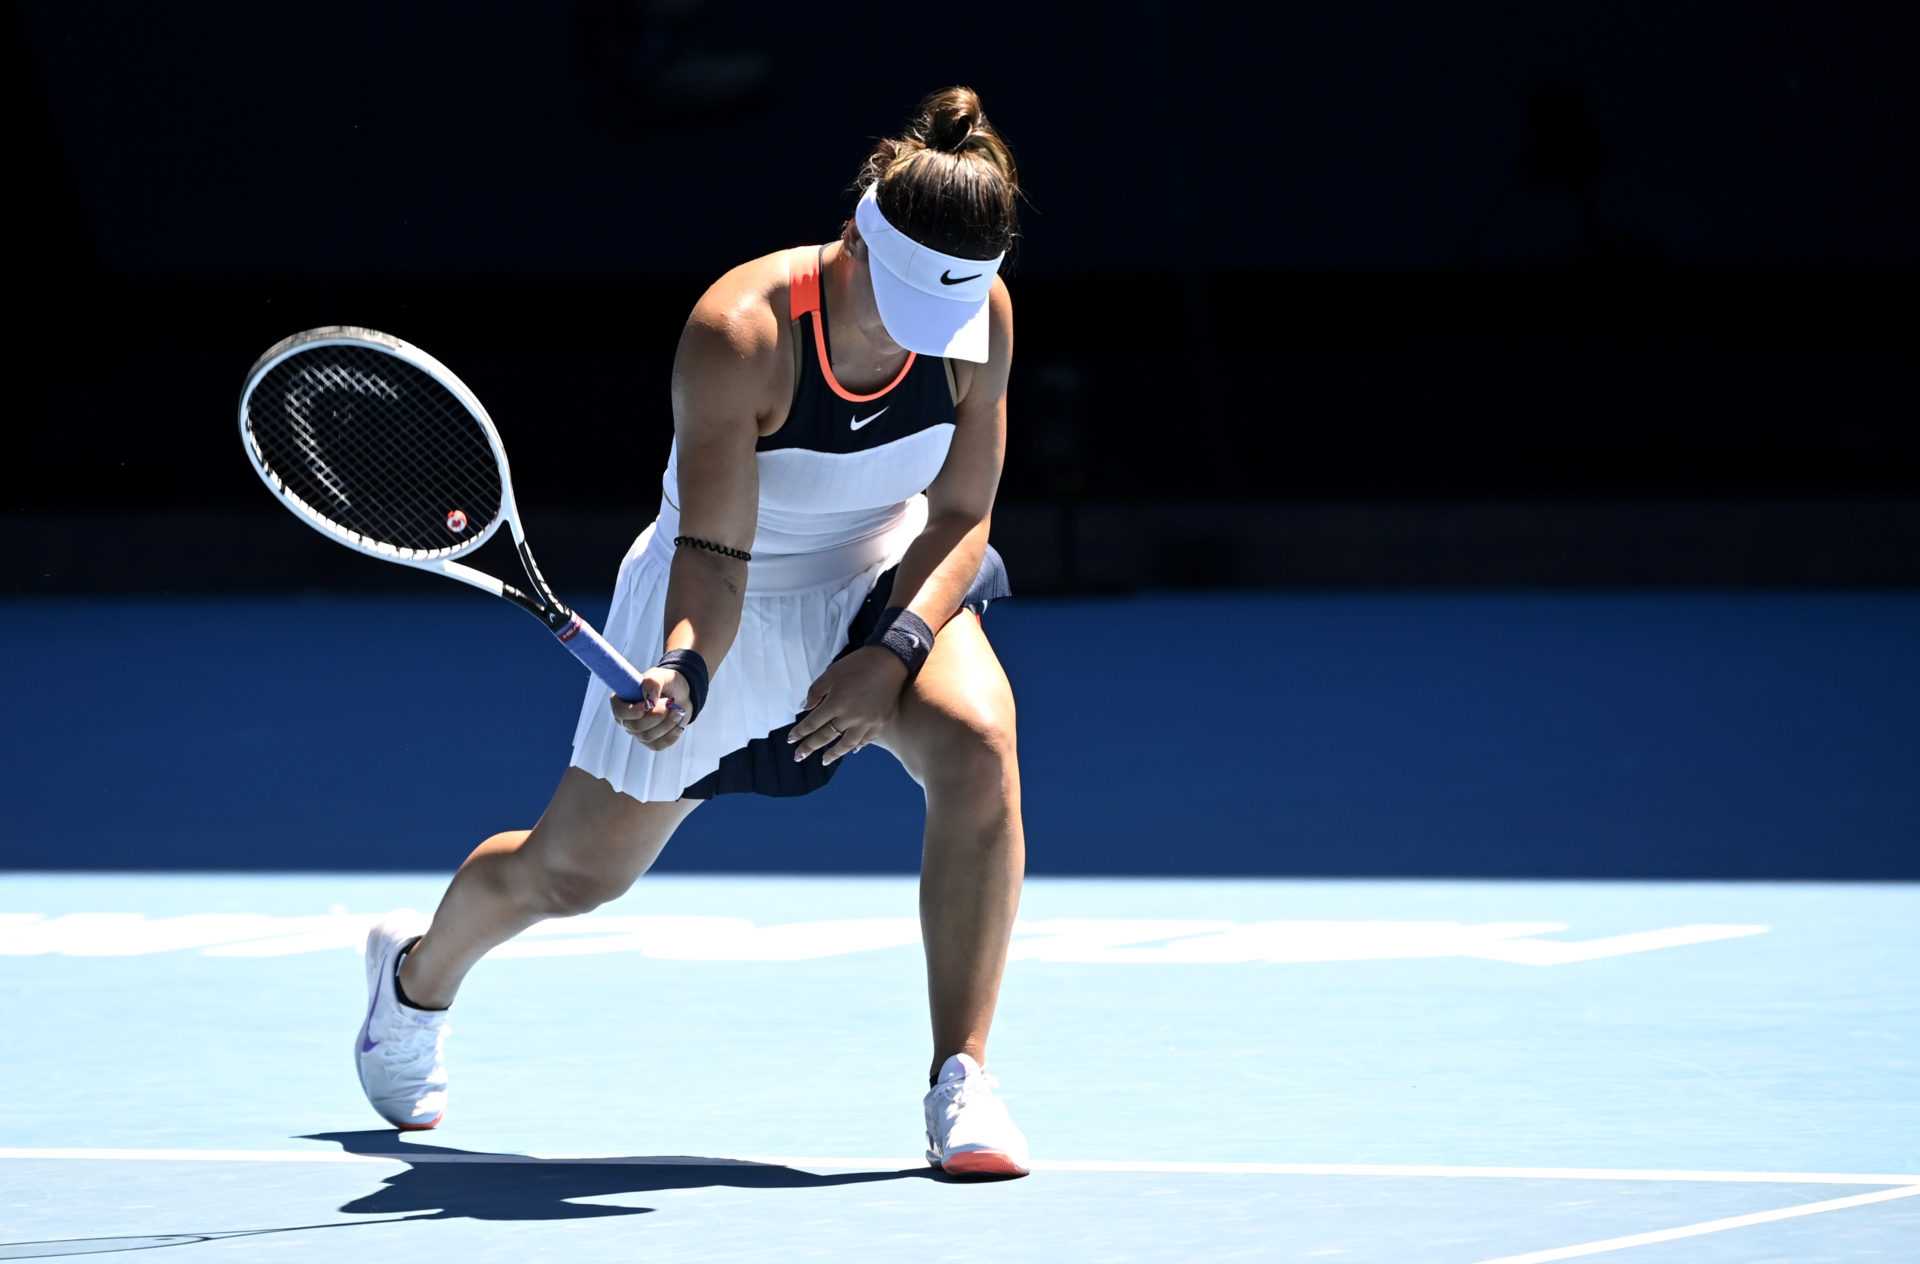 Les blessures continuent pour Bianca Andreescu après la déception de l'Open d'Australie 2021